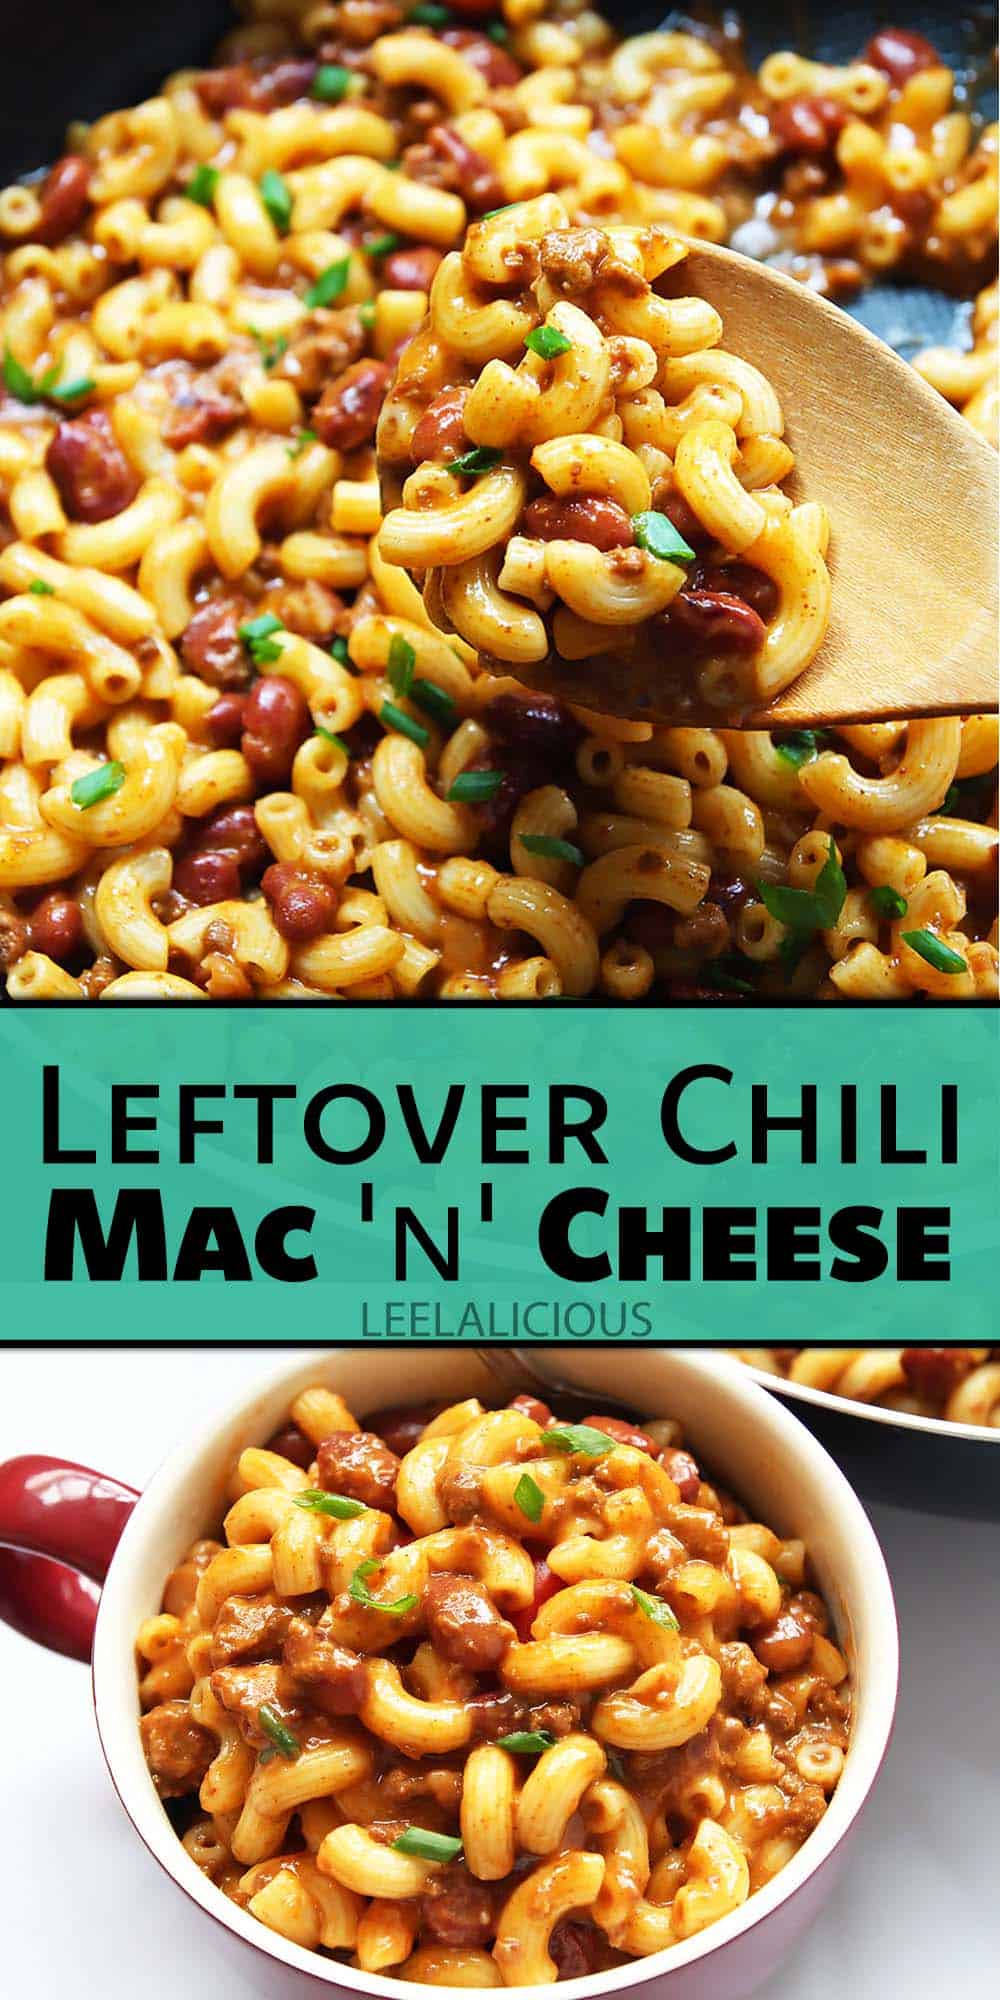 Leftover Chili Mac & Cheese Recipe